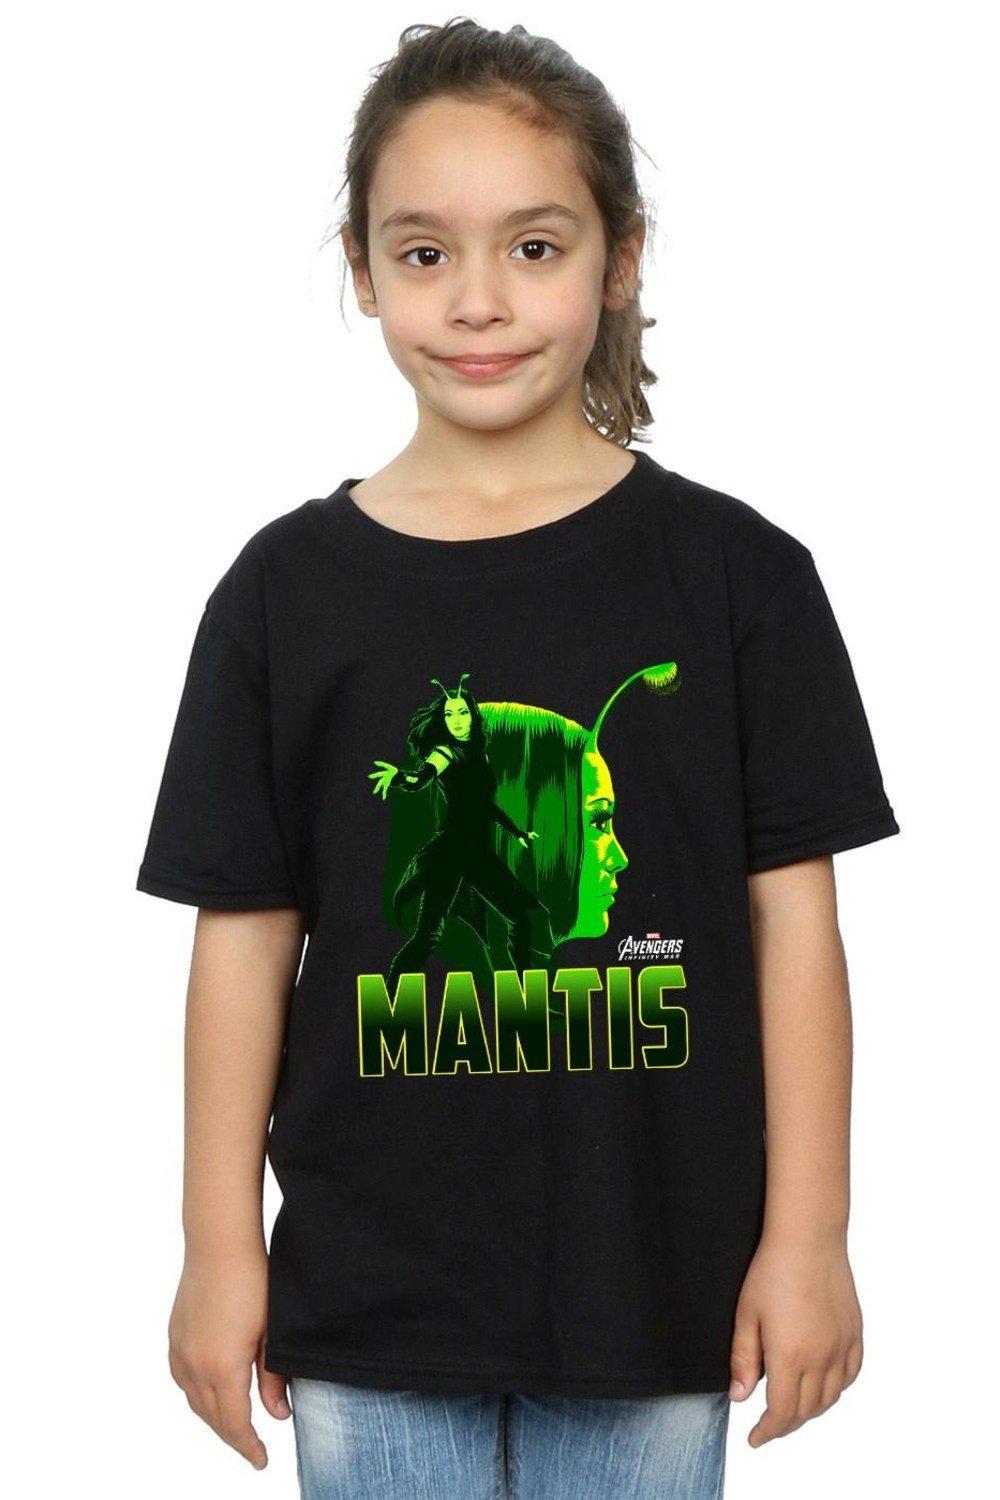 Avengers Infinity War Mantis Character Cotton T-Shirt